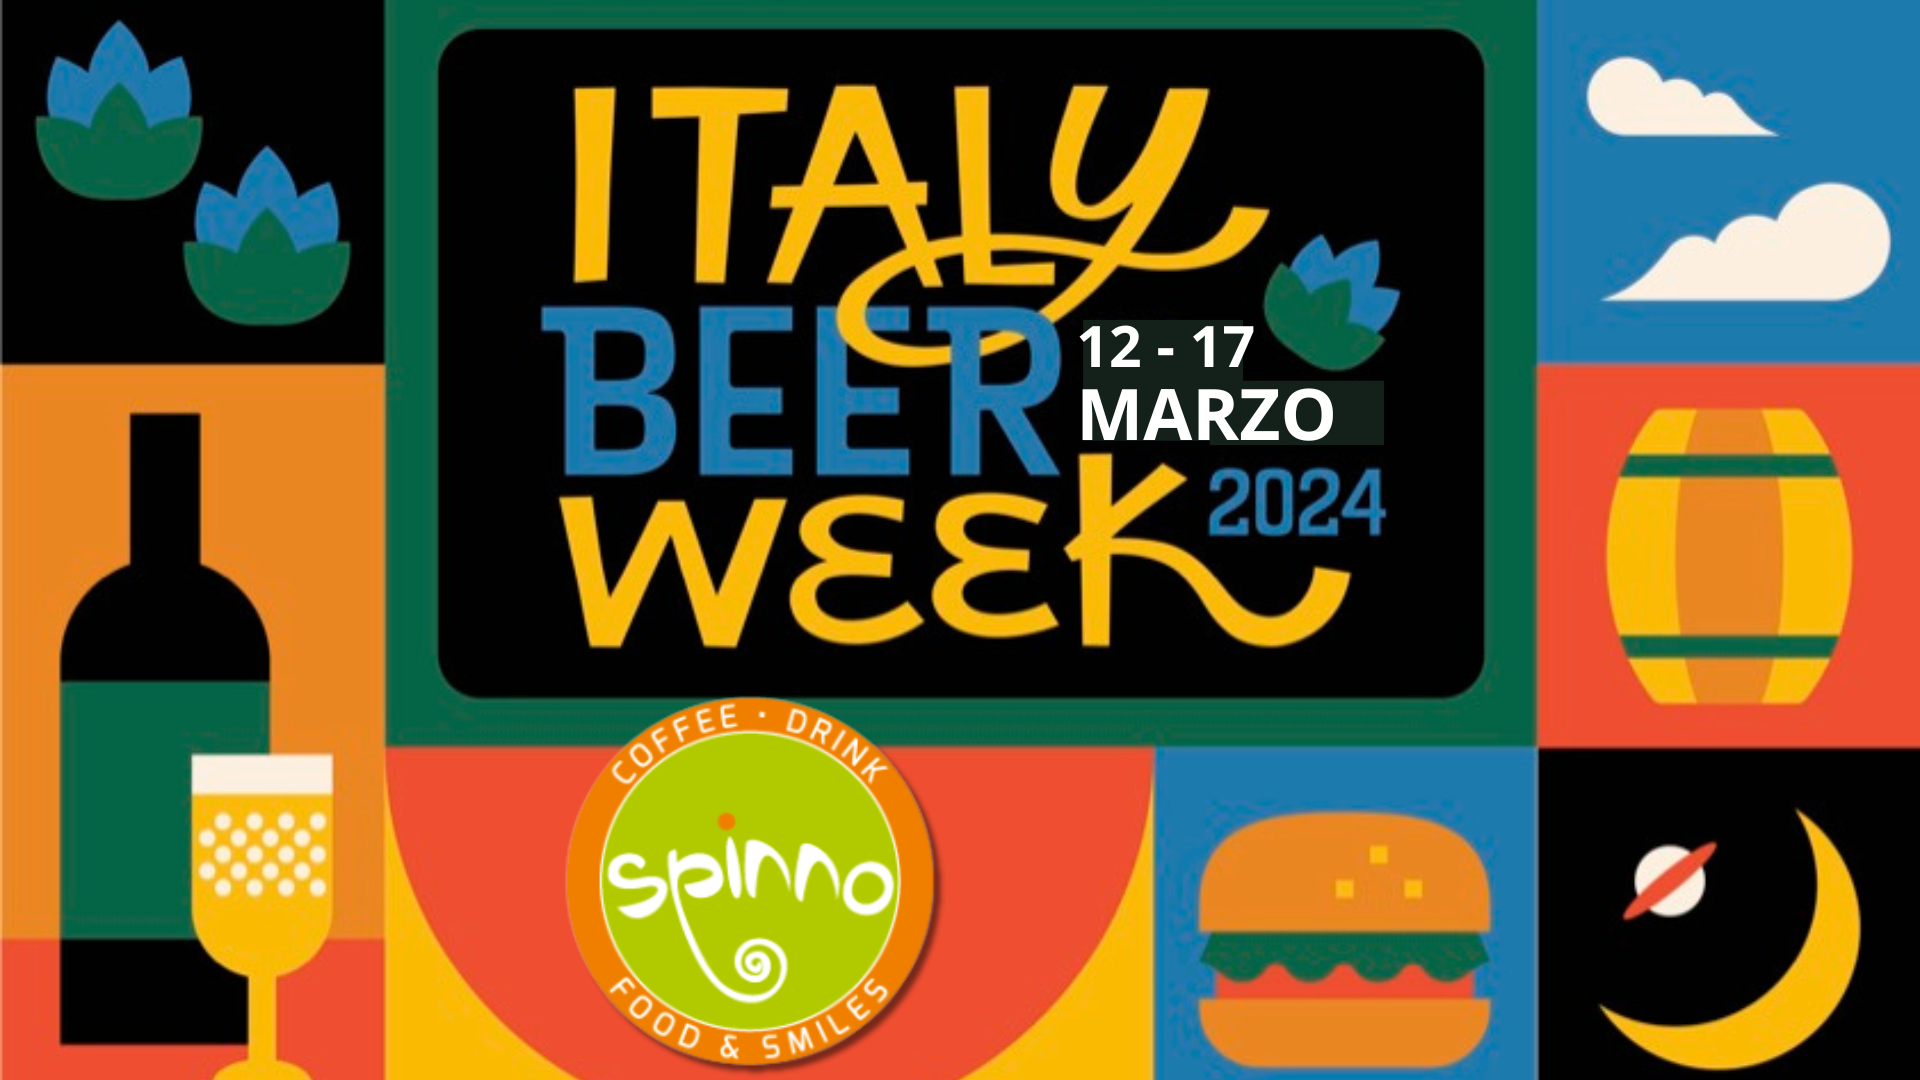 Italy beer week 2024 Spinno